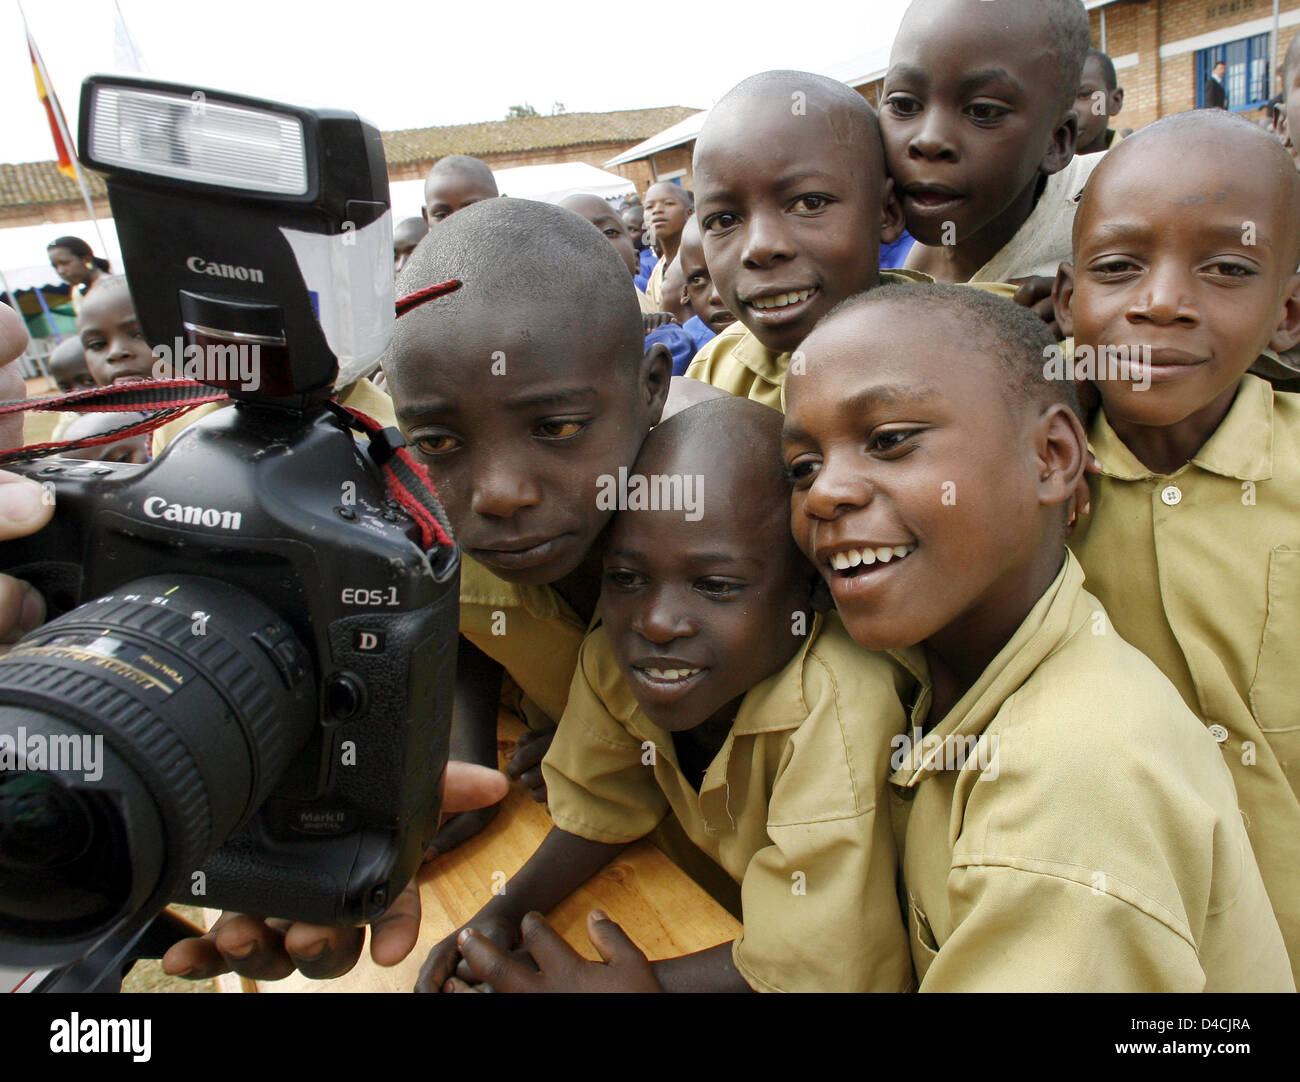 Kinder untersuchen eine Kamera während der Einweihungsfeier für ein neues Schulgebäude in Butare, Ruanda, 7. Februar 2008. Der deutsche Bundespräsident Koehler und seine Frau Eva zahlen einen dreitägigen Besuch in Ruanda. Foto: WOLFGANG KUMM Stockfoto